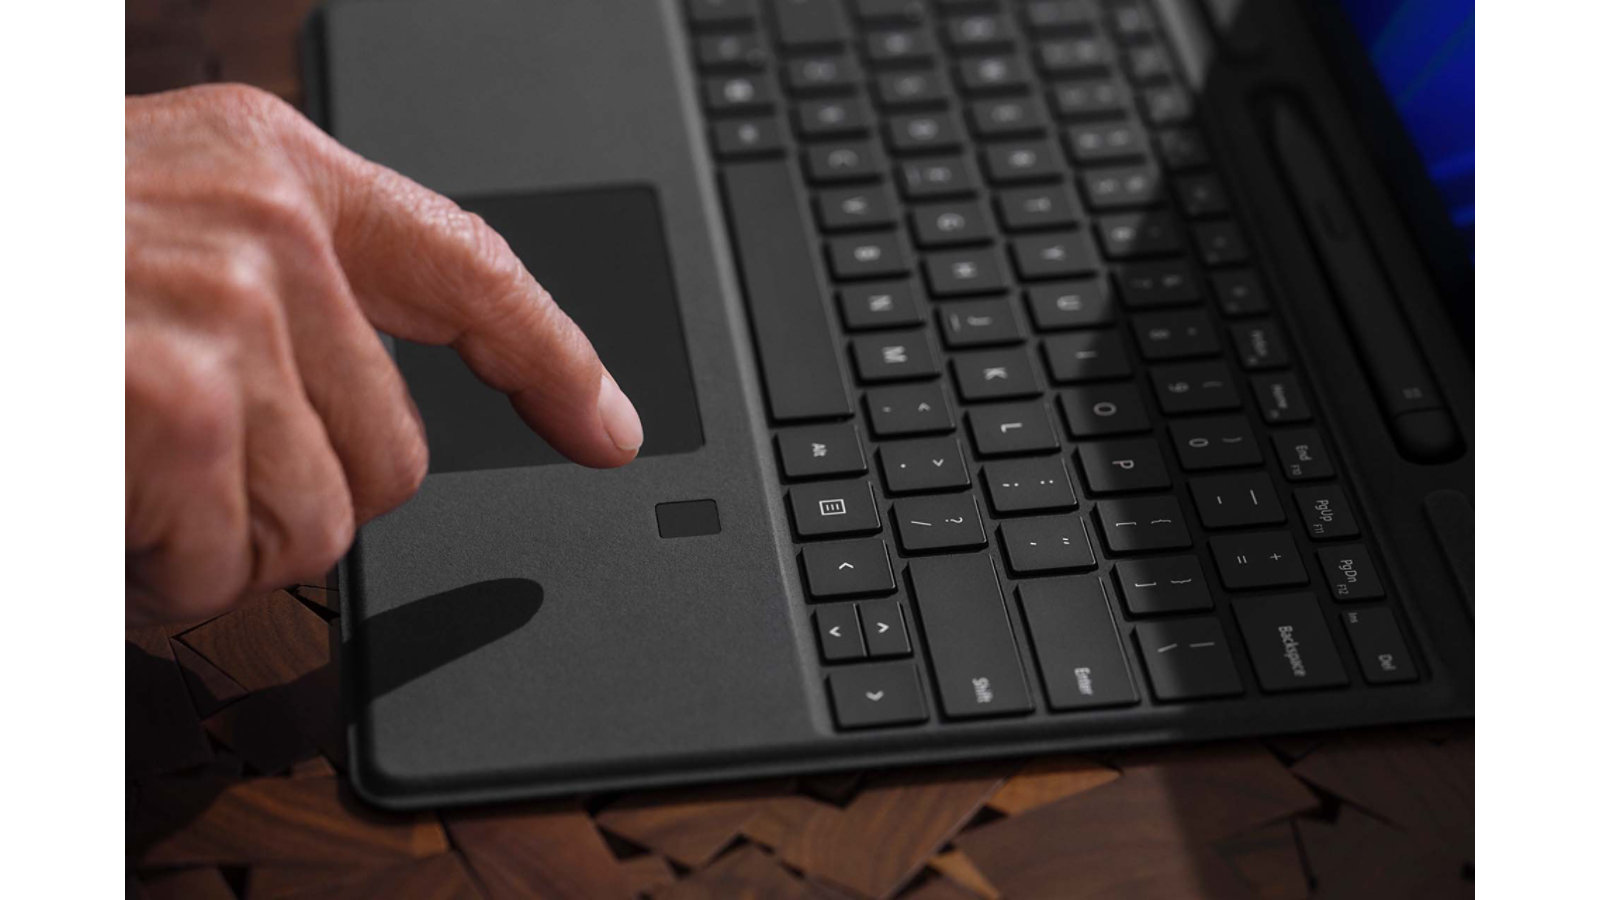 有人的手指停放在 Surface Pro Signature Keyboard 的生物特徵辨識登入功能上